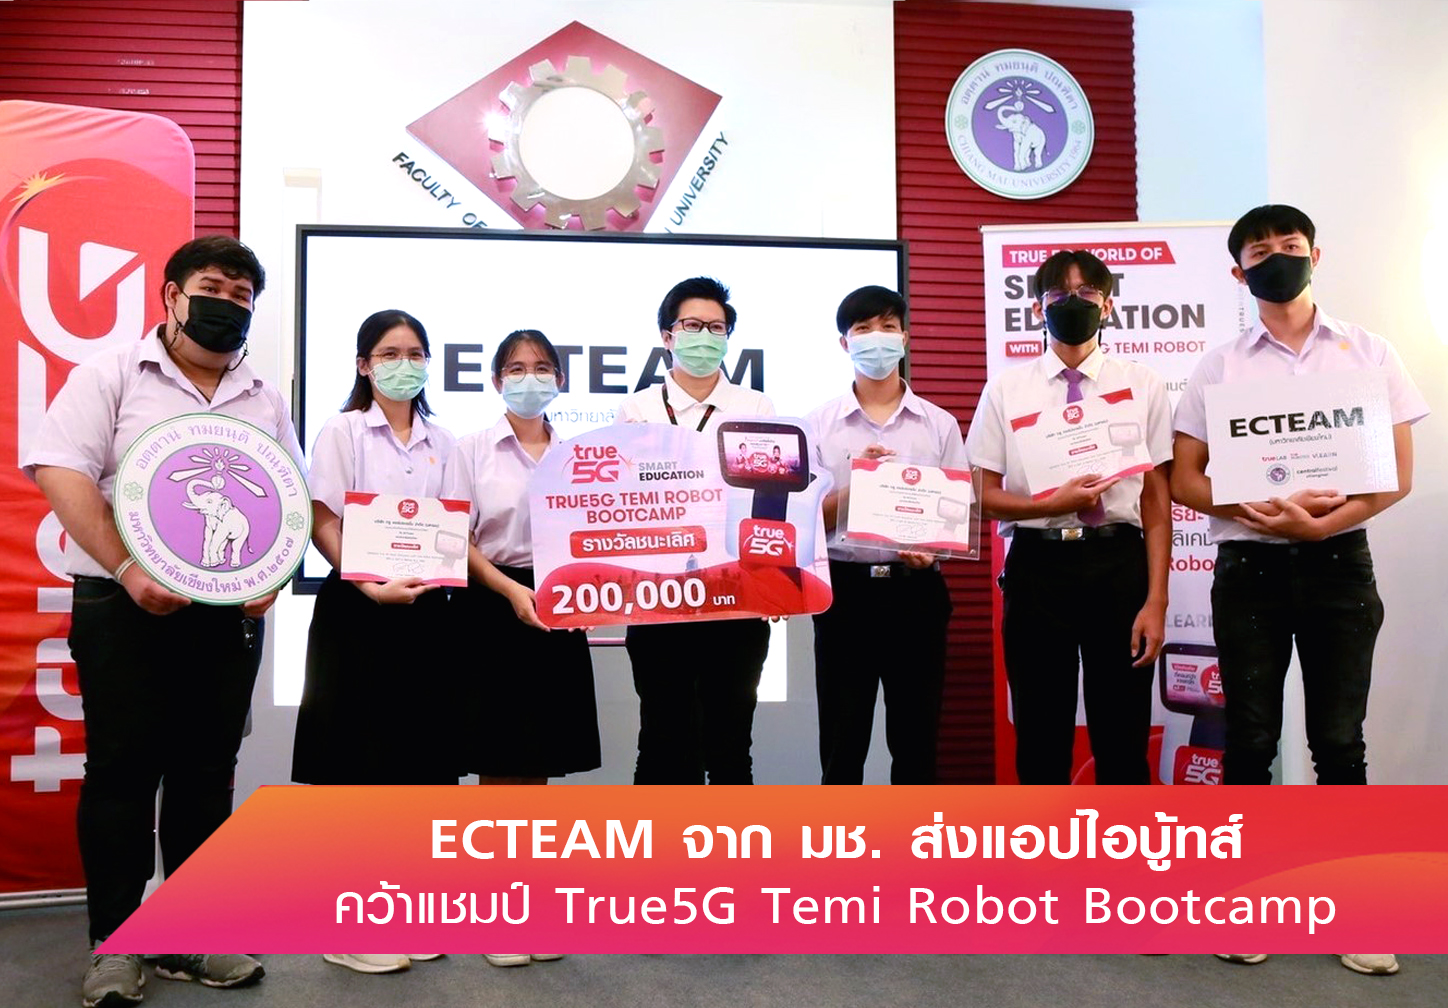 ทรู 5G เผยโฉม 3 ทีมนักศึกษา คว้ารางวัลโครงการ True5G Temi Robot Bootcamp